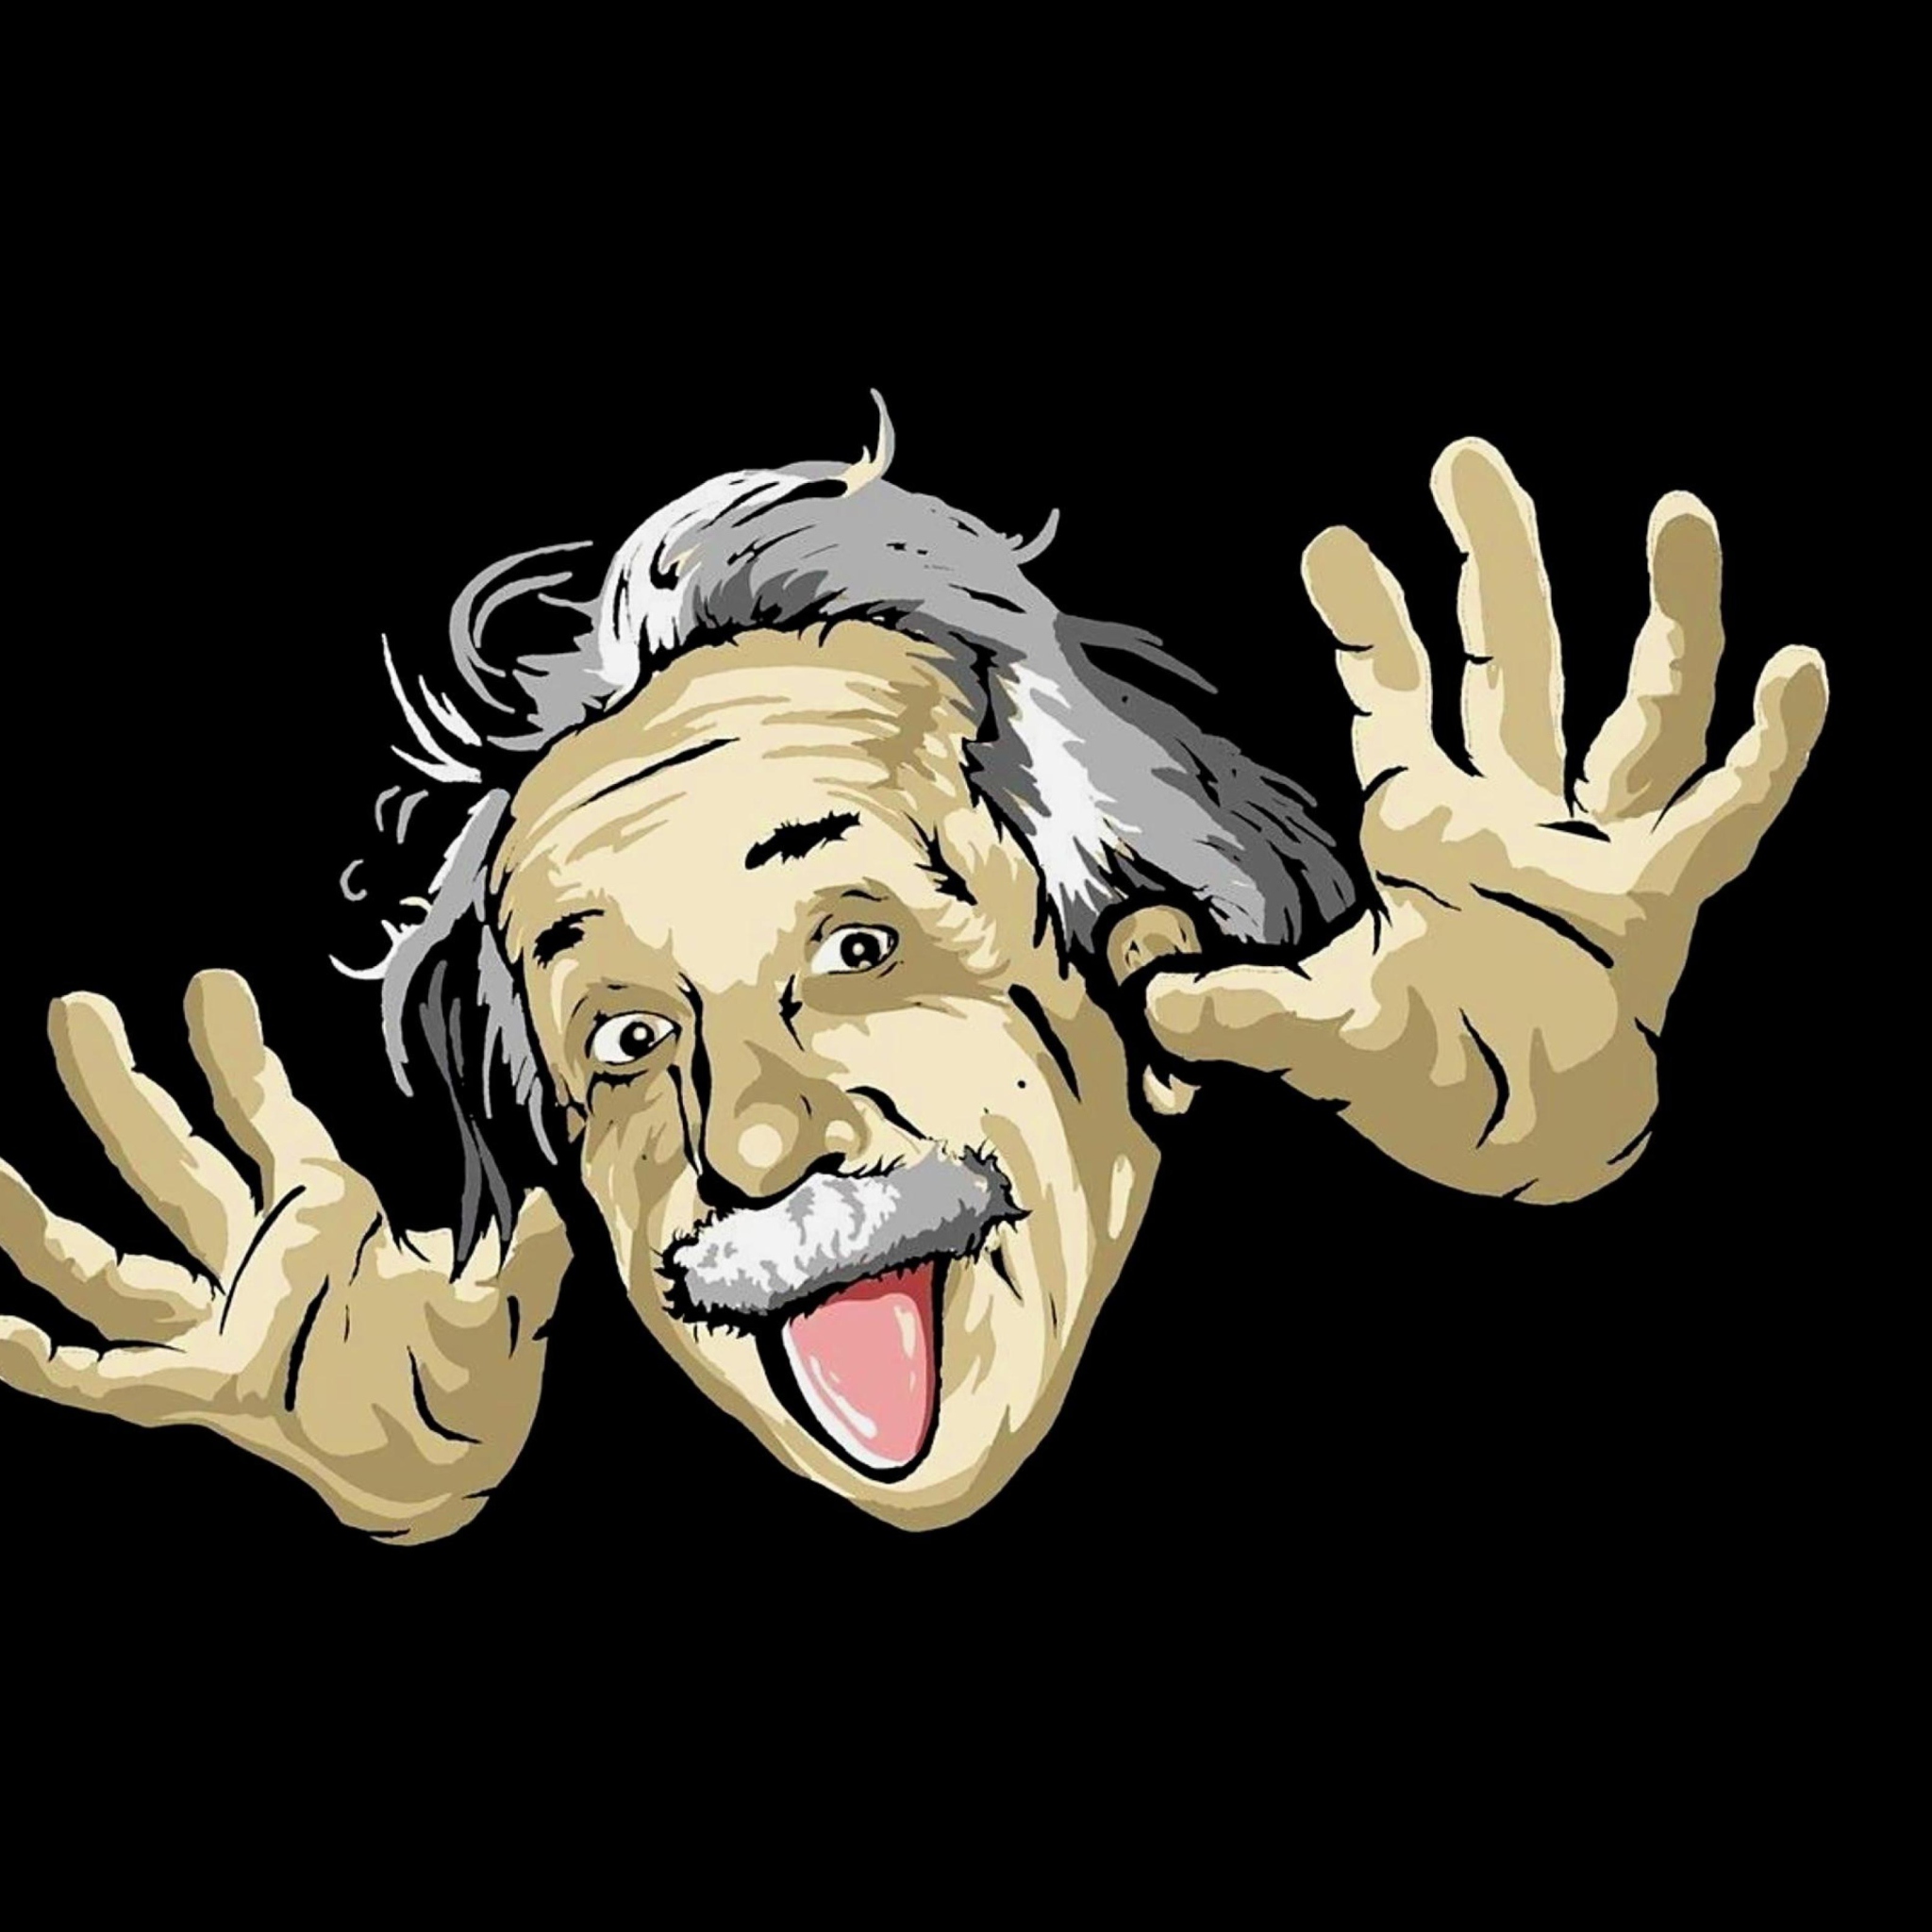 Das Funny Albert Einstein Wallpaper 2048x2048